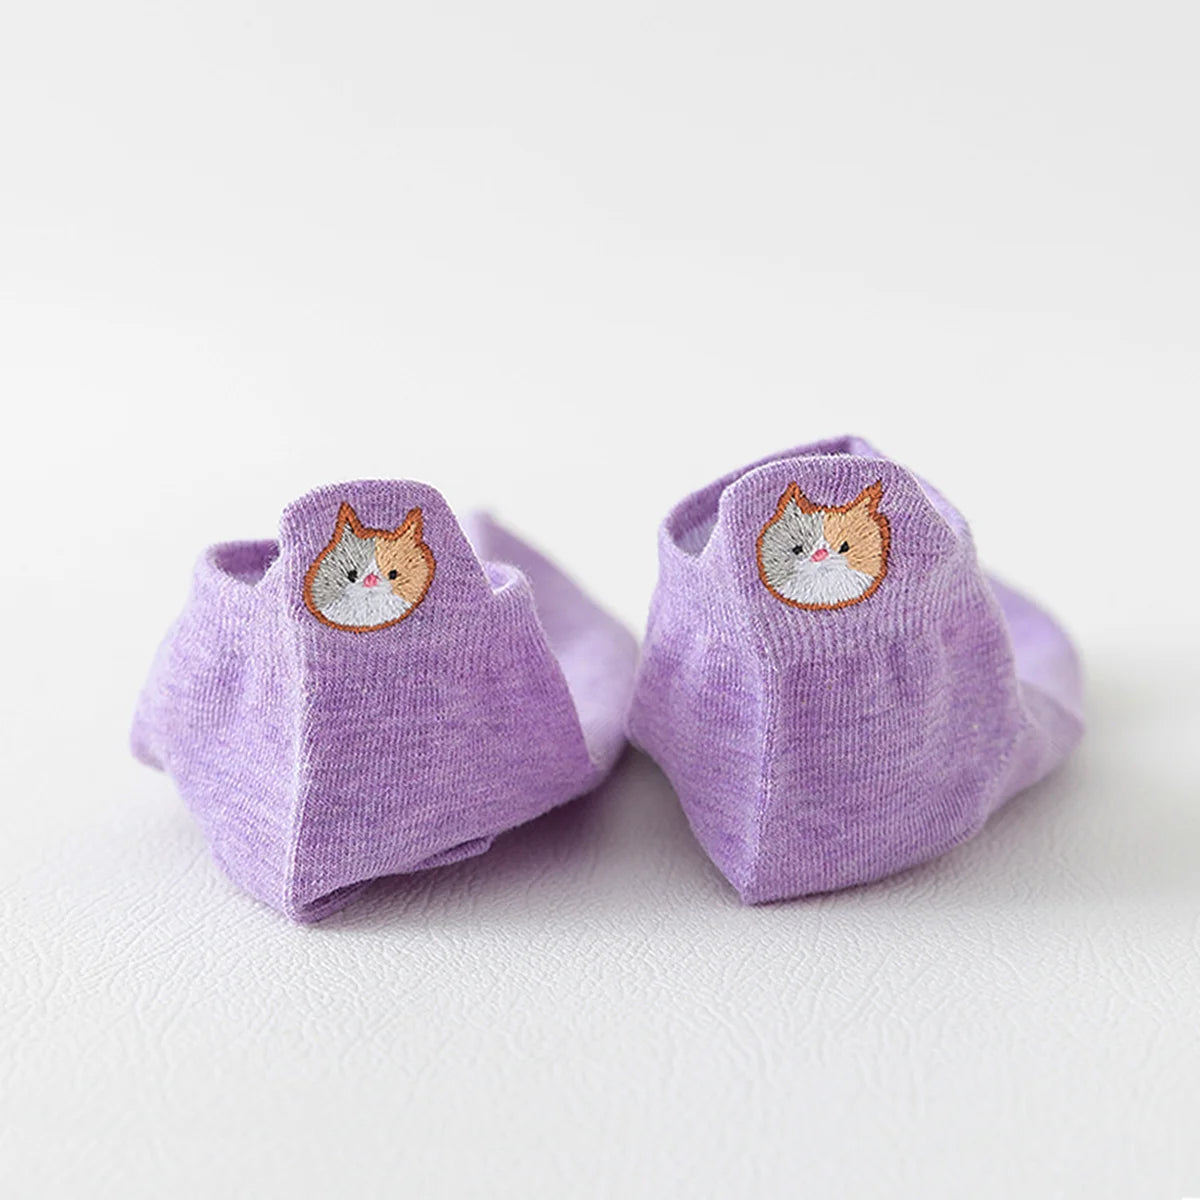 Chaussettes violette en coton à languette chat pour femme | Chaussettes confortables et élégantes | Idéales pour le quotidien ou les occasions spéciales | Disponibles en plusieurs couleurs et tailles